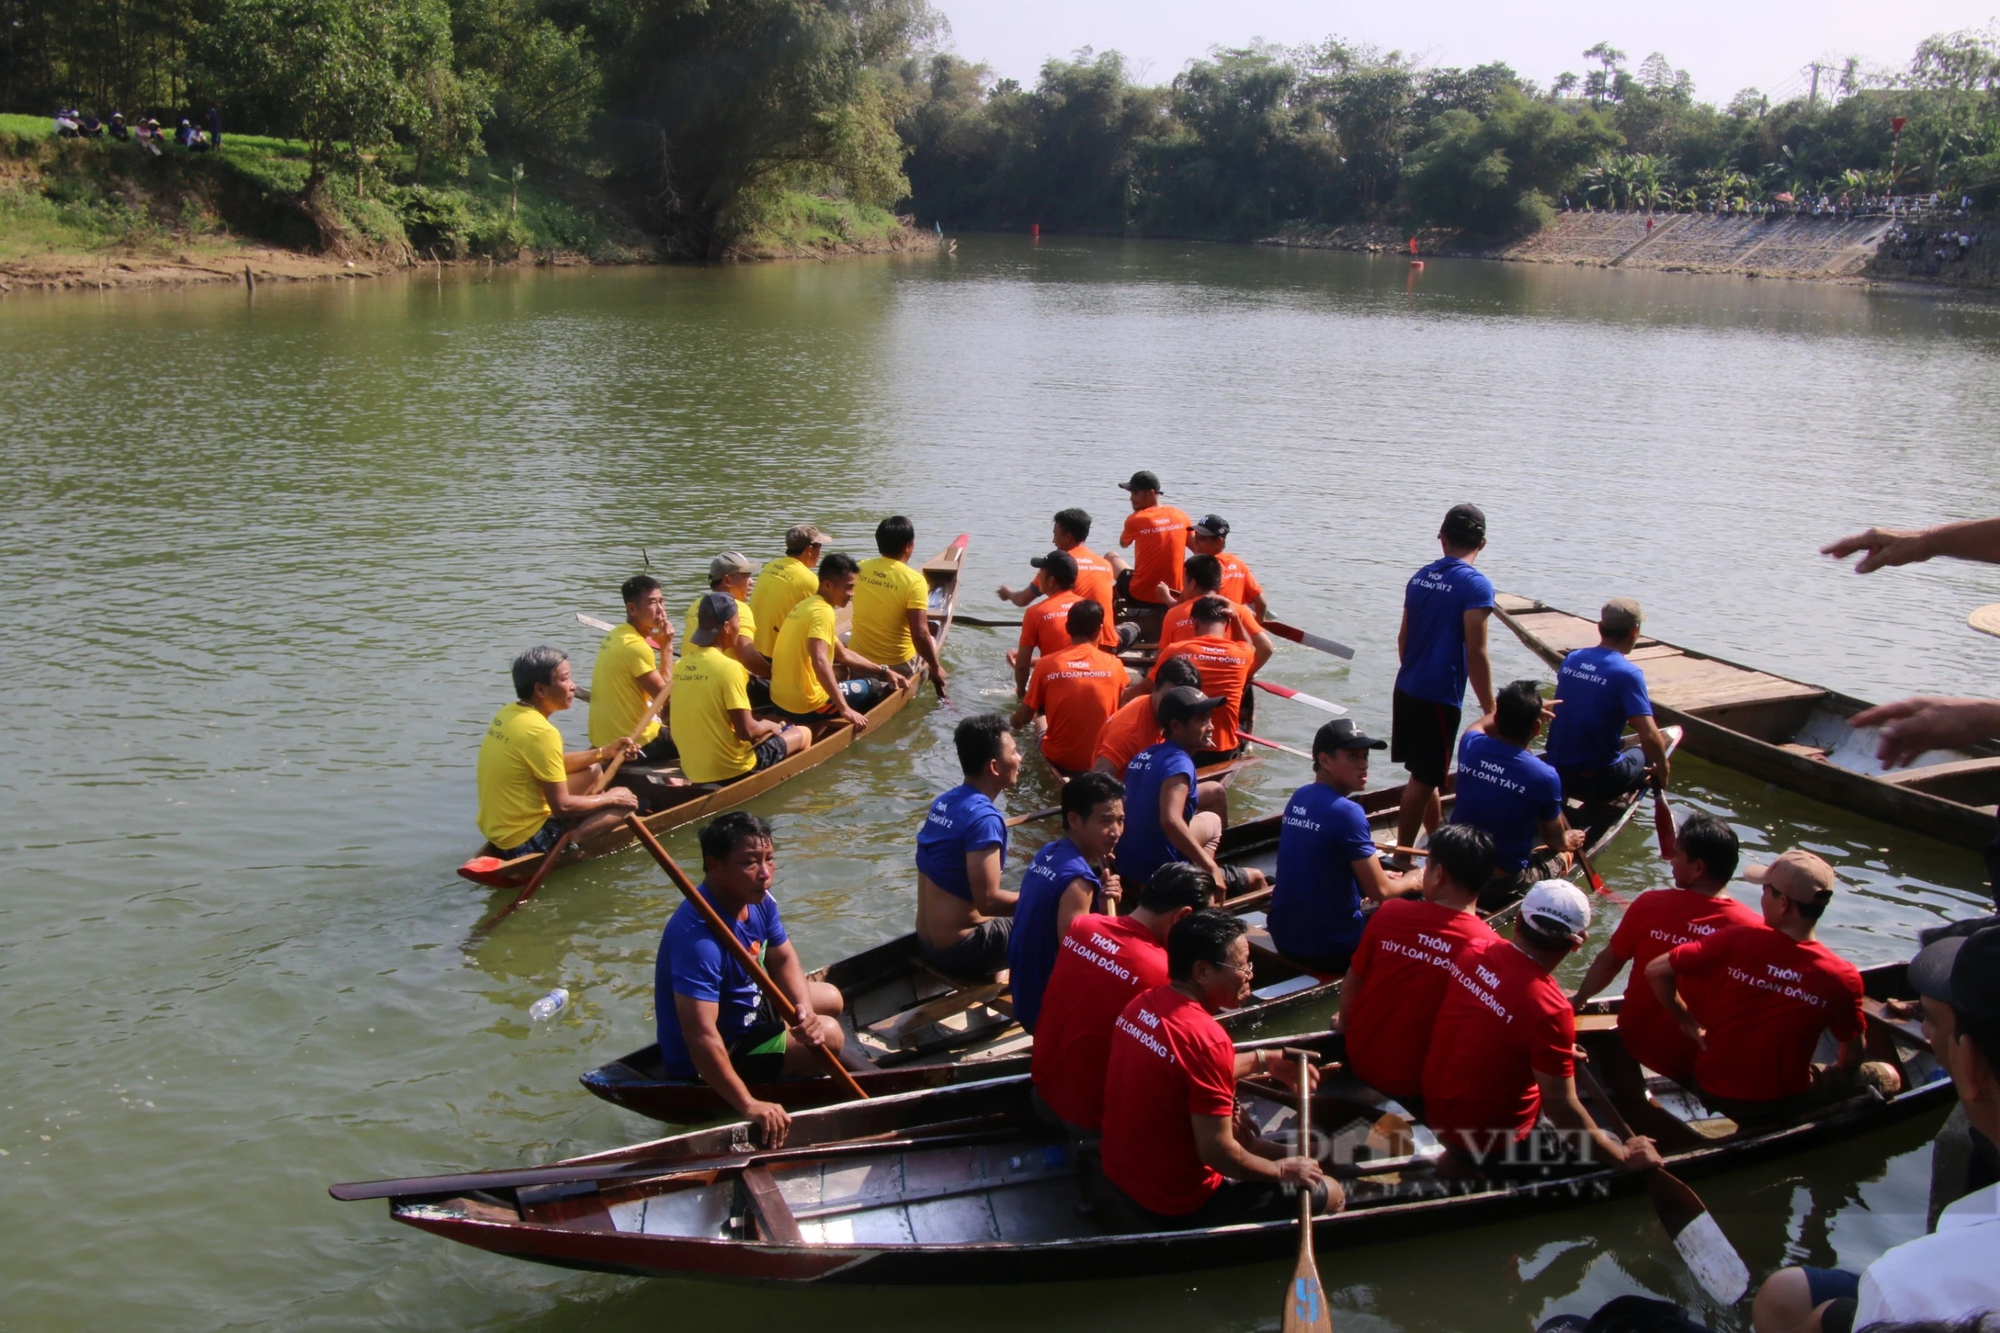 Tranh đua quyết liệt tại lễ hội đua thuyền nơi làng cổ 500 tuổi ở Đà Nẵng- Ảnh 1.